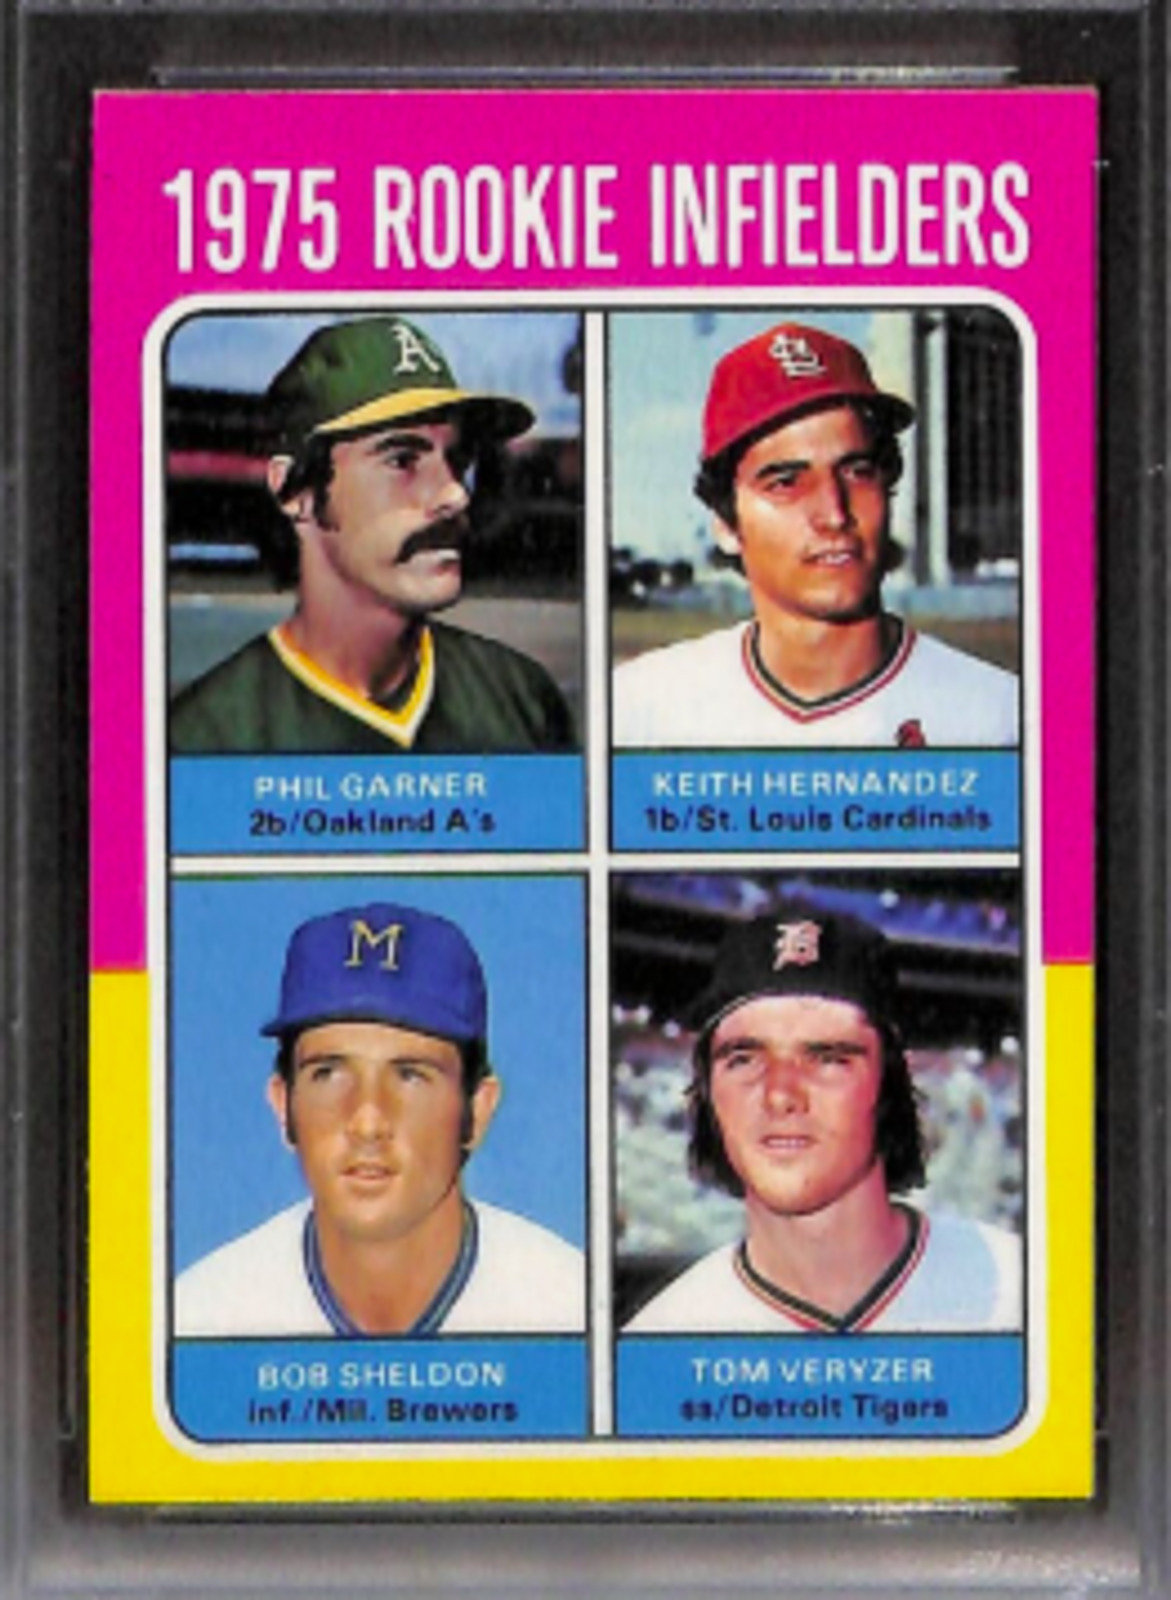 1975 Topps Keith Hernandez rookie card